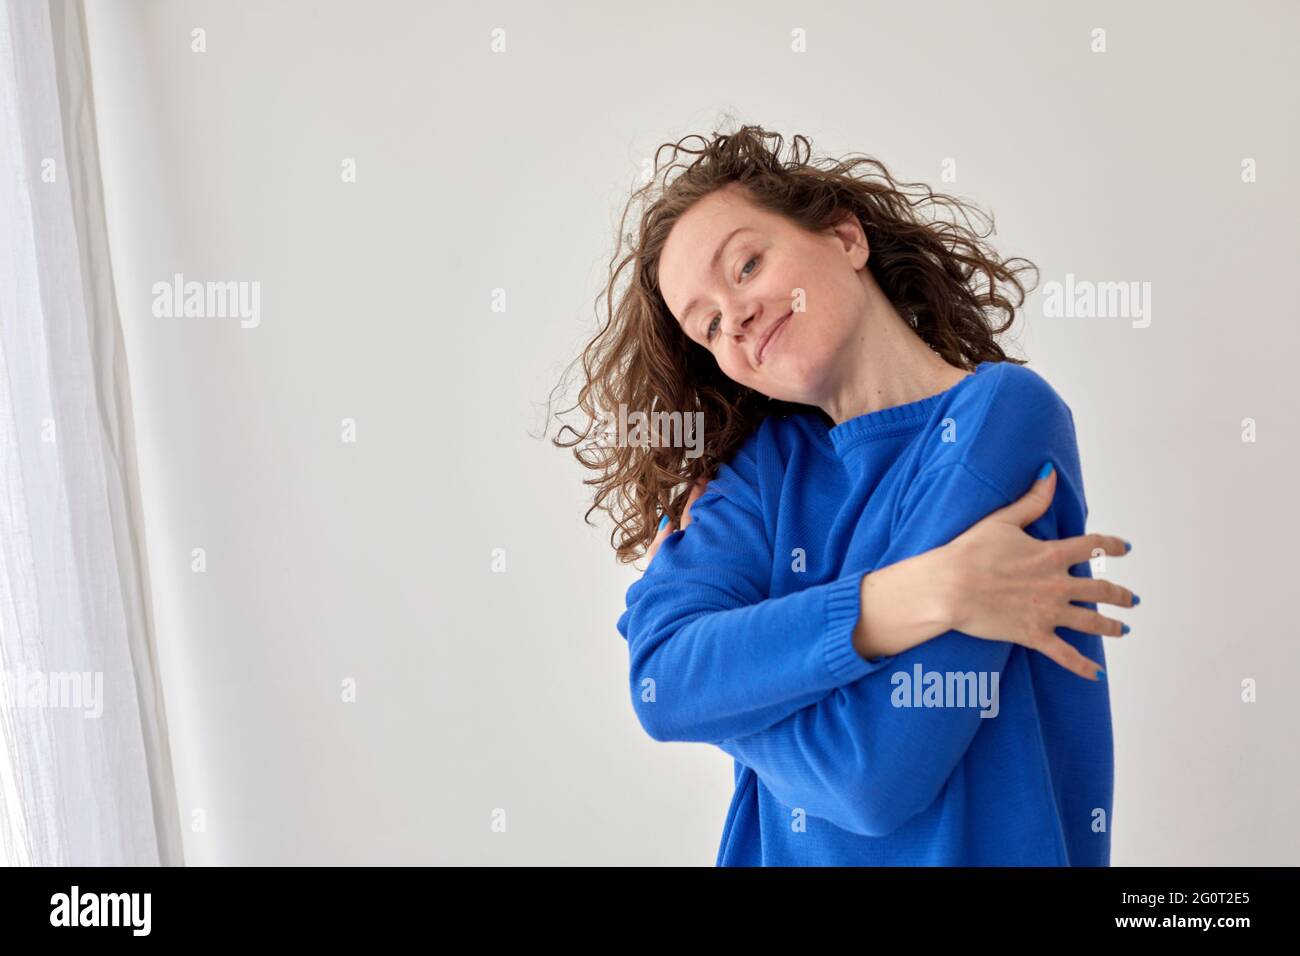 Abrazo de la joven confiada feliz contra fondo blanco de la pared. Vista lateral del contenido femenino con un moderno suéter azul sobre fondo gris Foto de stock